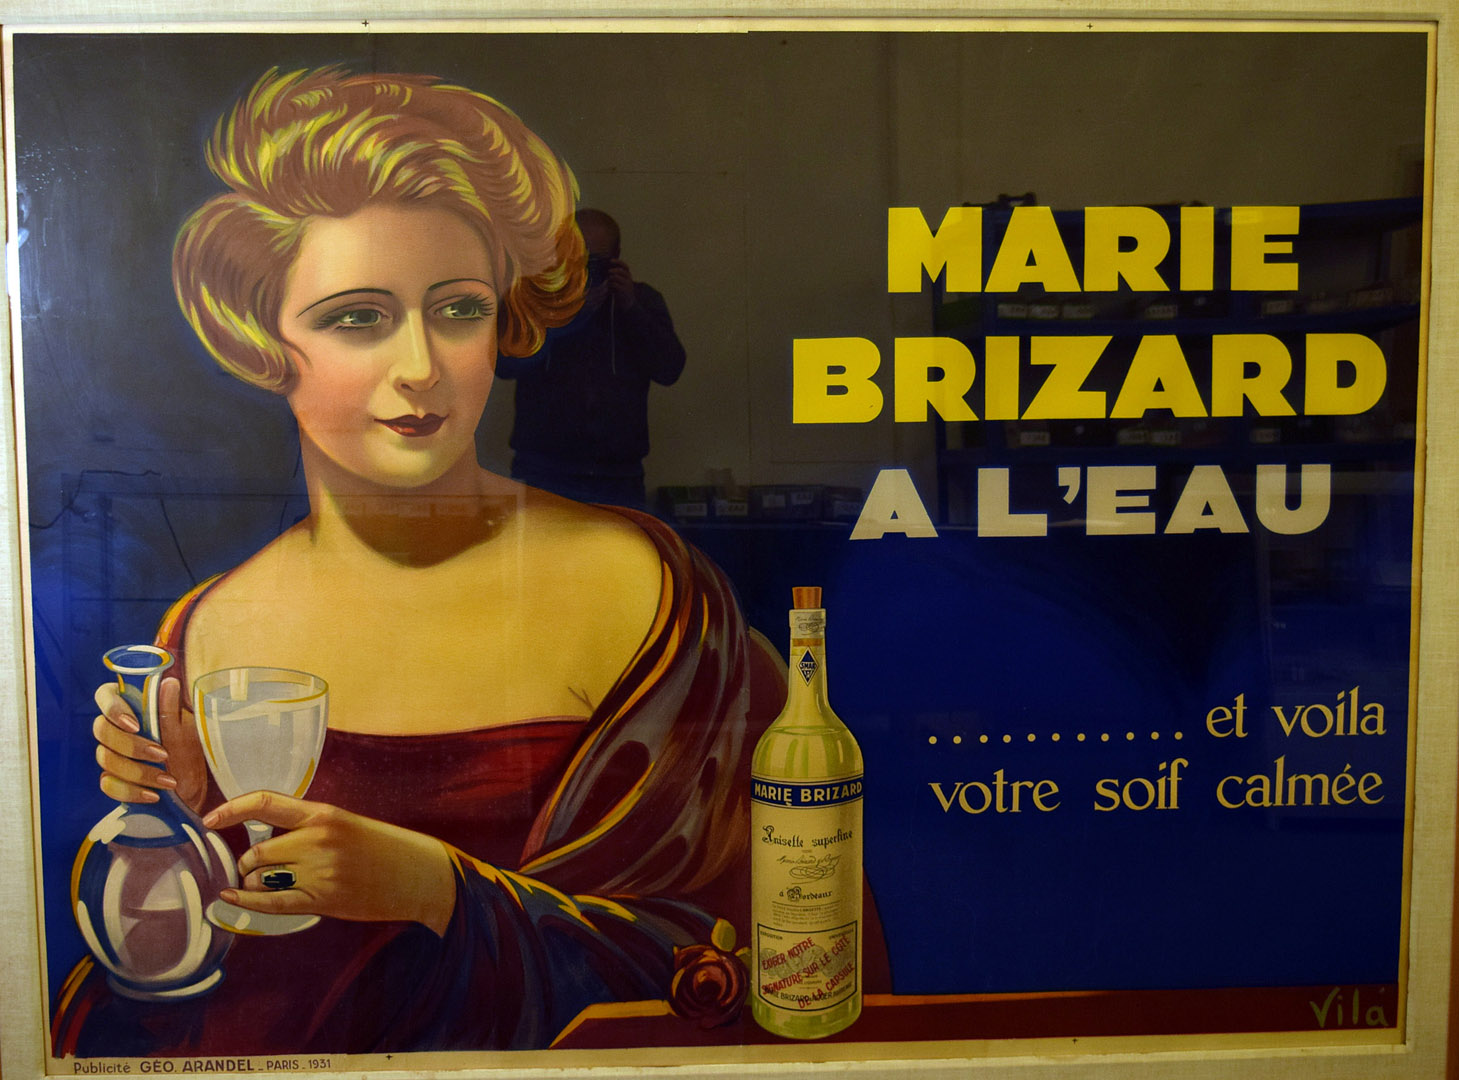 Marie Brizard a L'eau, et voila votre soif calmee, this advertising poster by Emilio Vila (1887-